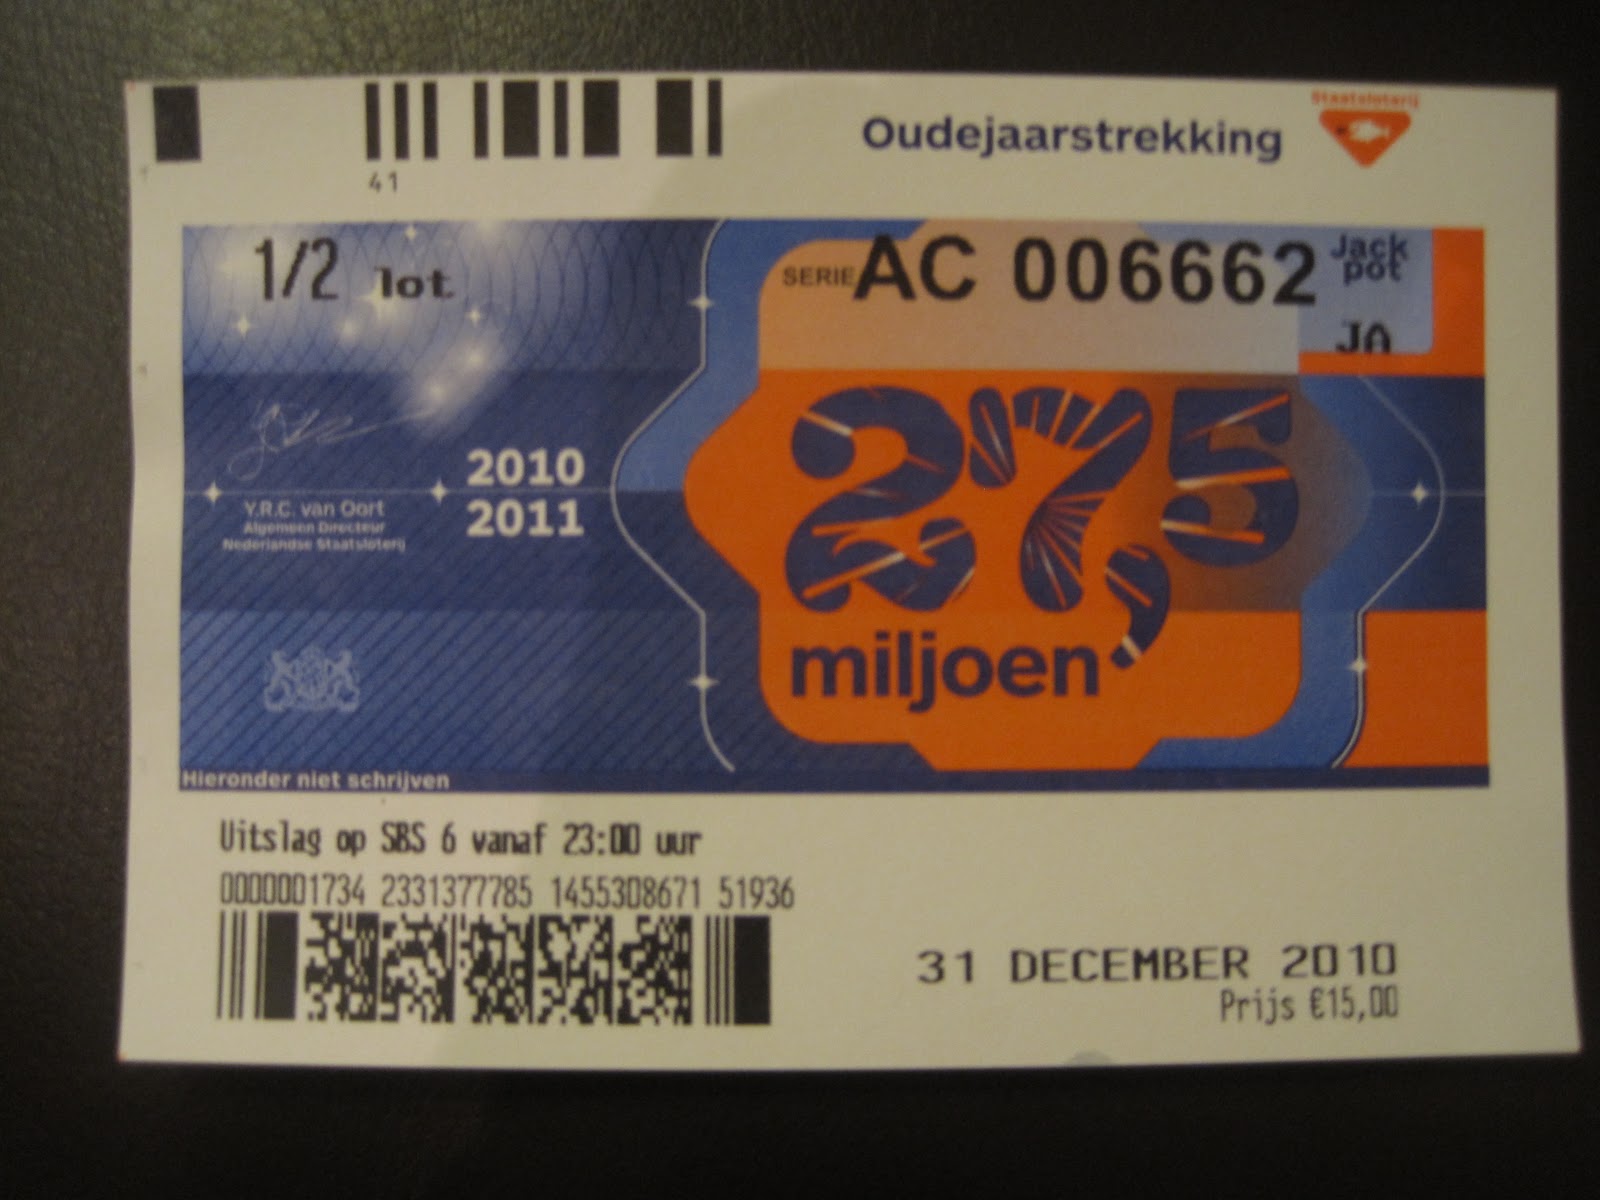 http://3.bp.blogspot.com/_Hb_scvFSChQ/TR6EfeX8LBI/AAAAAAAAAfE/a5w3CMugW2w/s1600/New+Year%2527s+Eve%252C+Netherlands%252C+lottery+ticket%252C+Cara+Nelissen.JPG